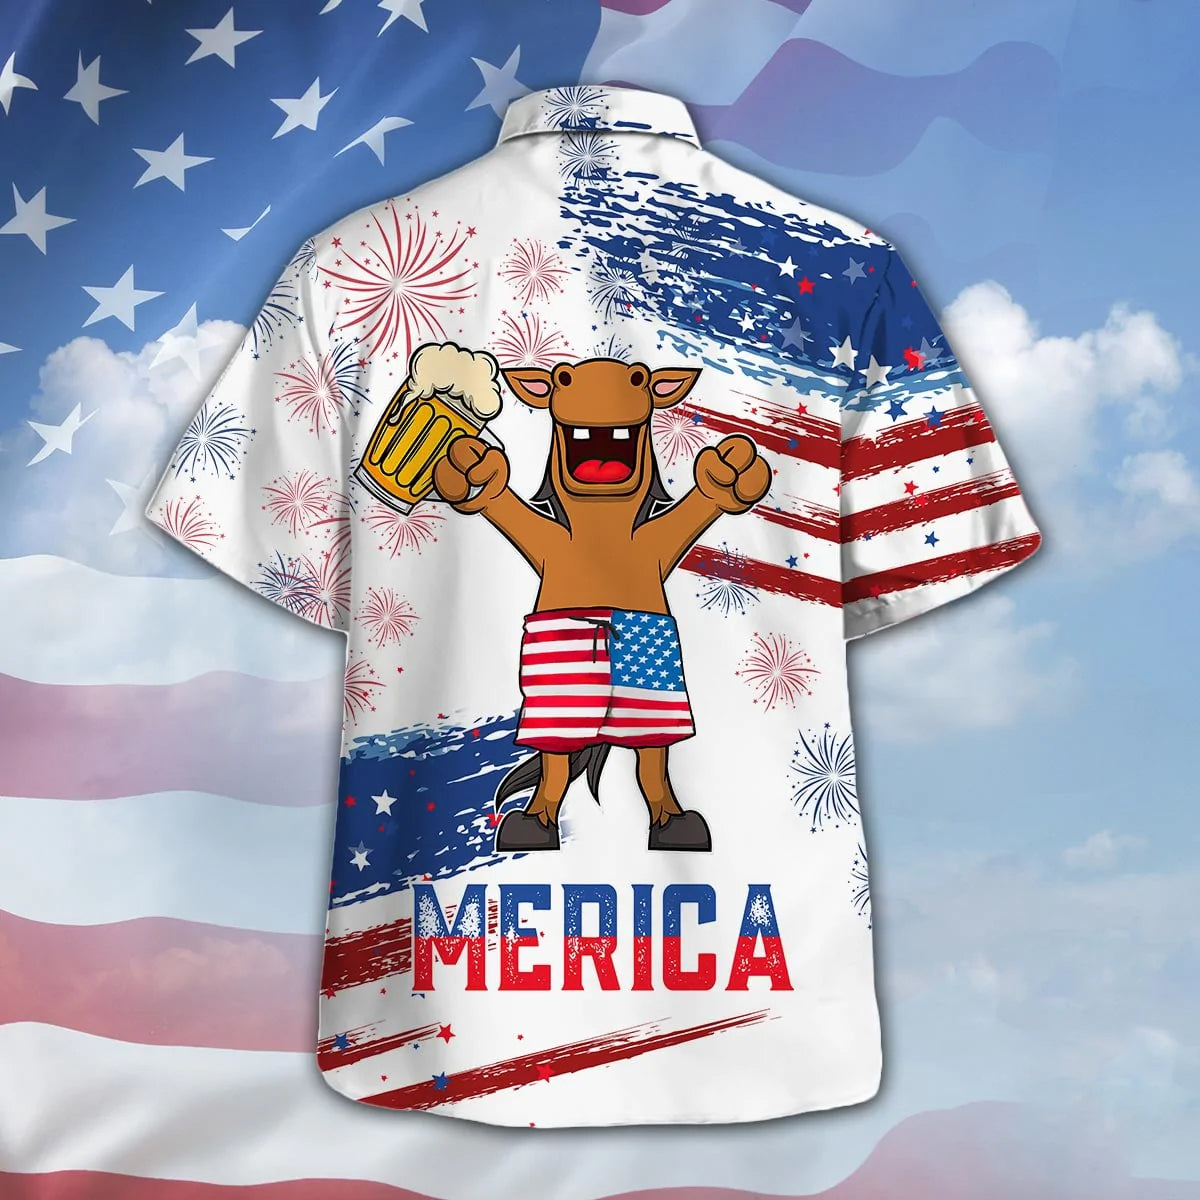 Horse Drink Beer Hawaiian Shirt Cute Merica Beer American Flag Pattern Hawaiian Shirts